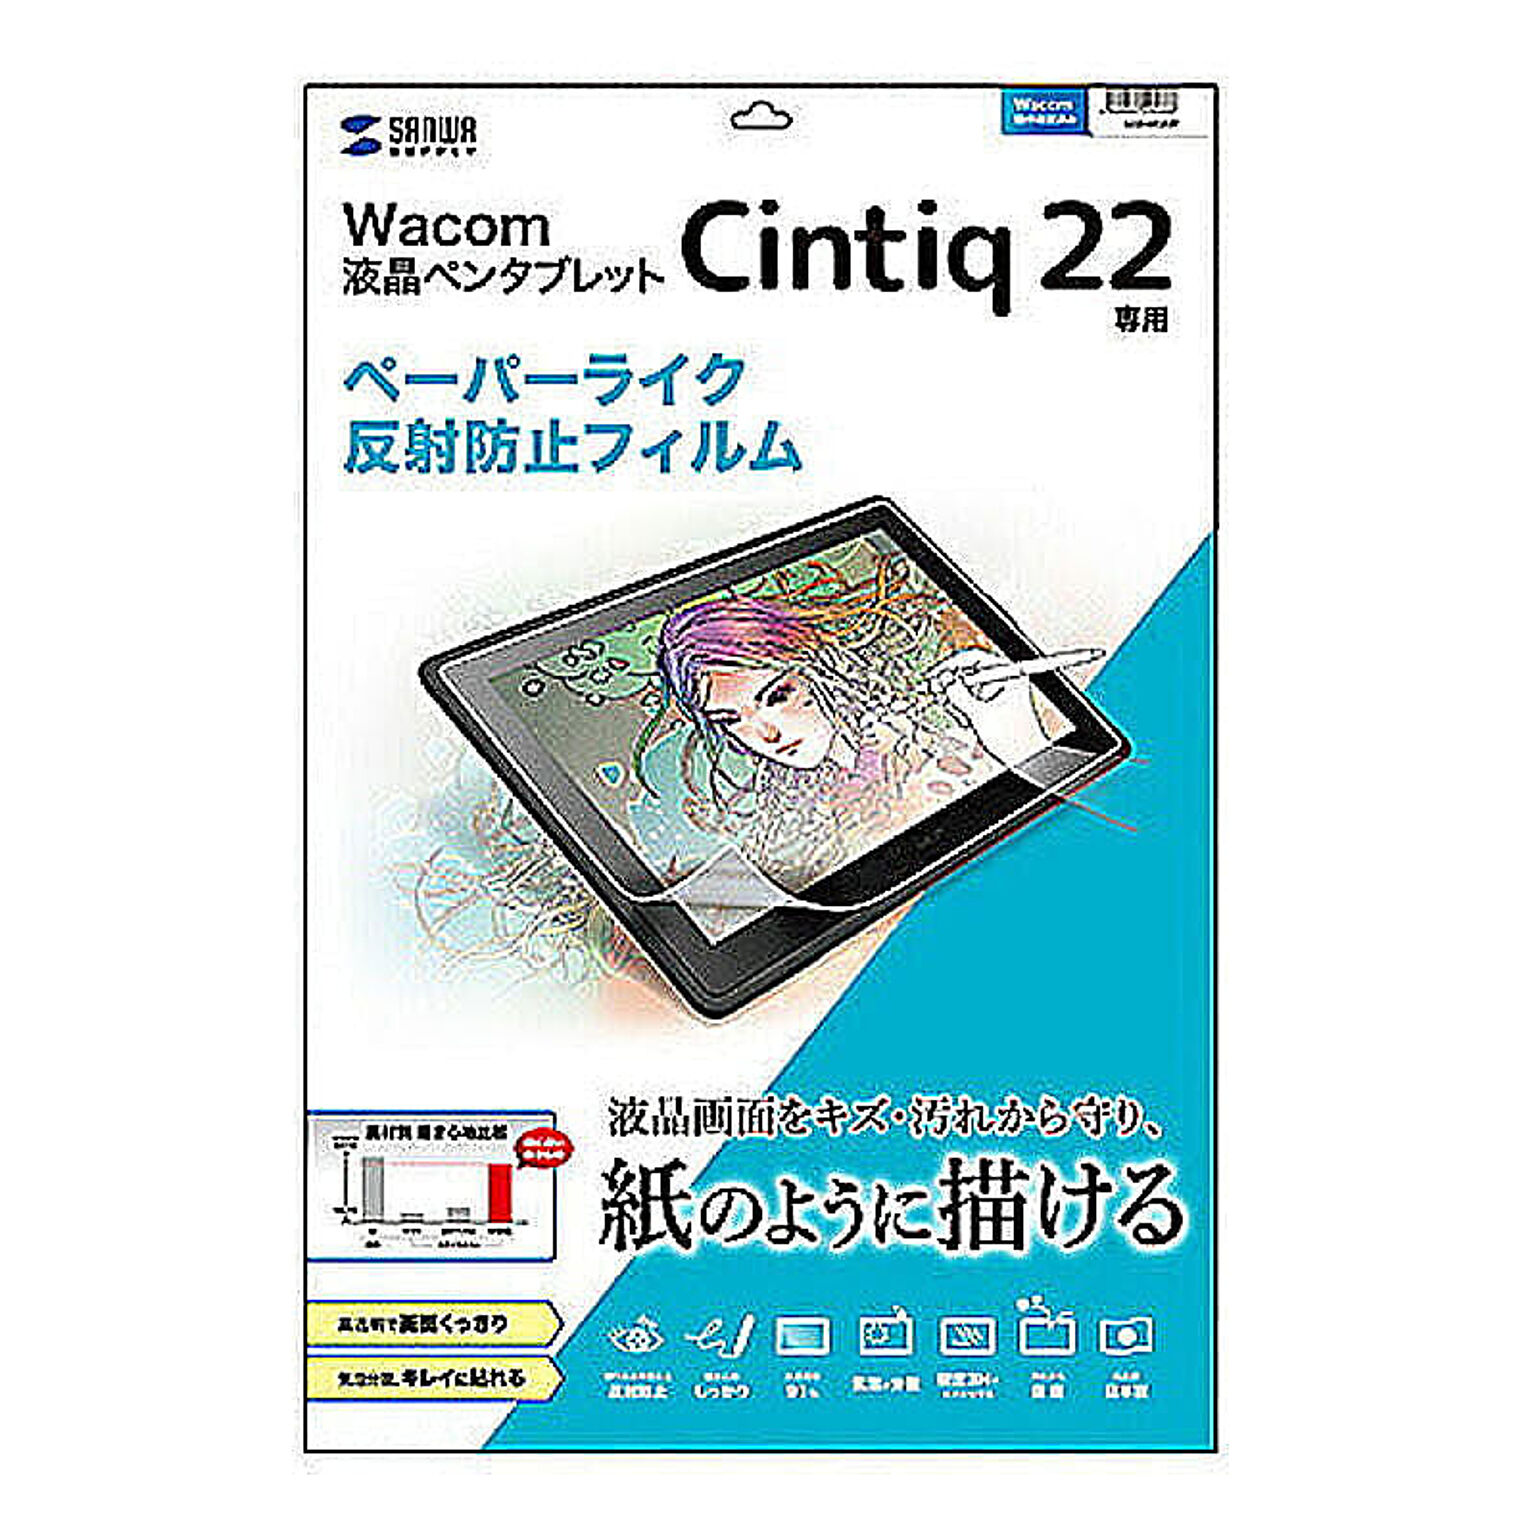 サンワサプライ Wacom ペンタブレット Cintiq 22用ペーパーライク反射防止フィルム LCD-WC22P 管理No. 4969887294666